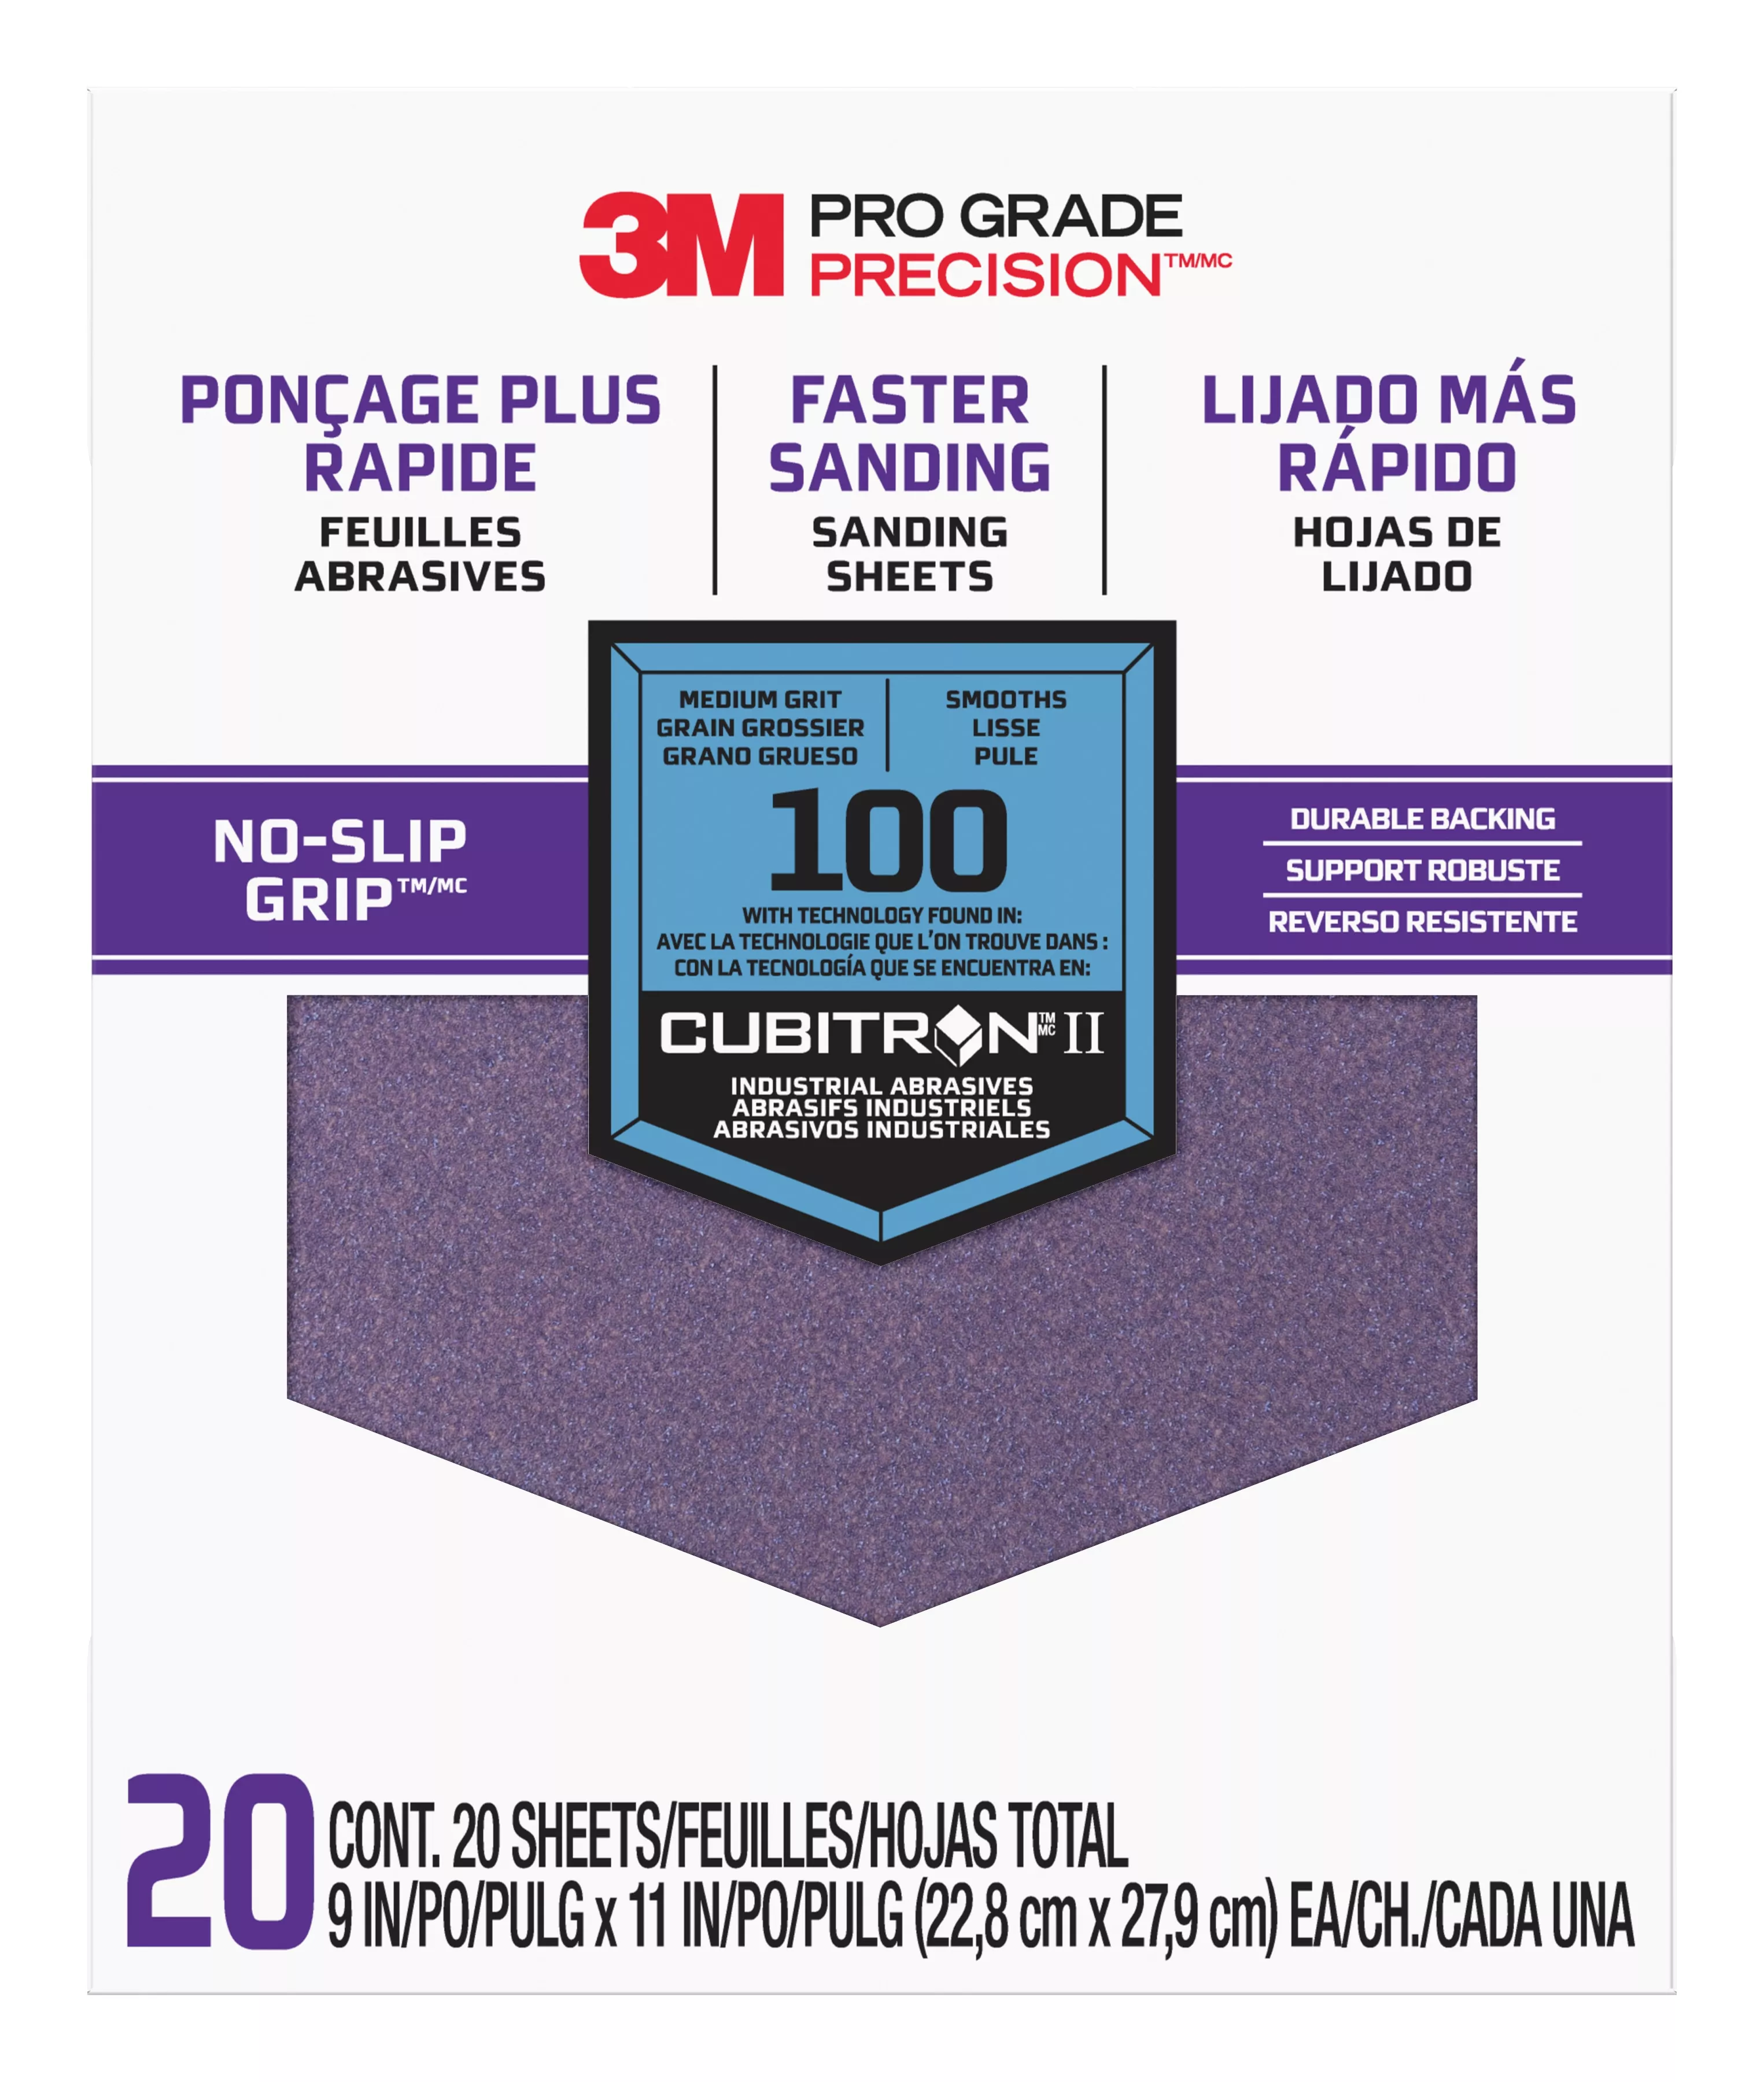 SKU 7010417805 | 3M™ Pro Grade Precision™ Faster Sanding Sanding Sheets 100 grit Medium